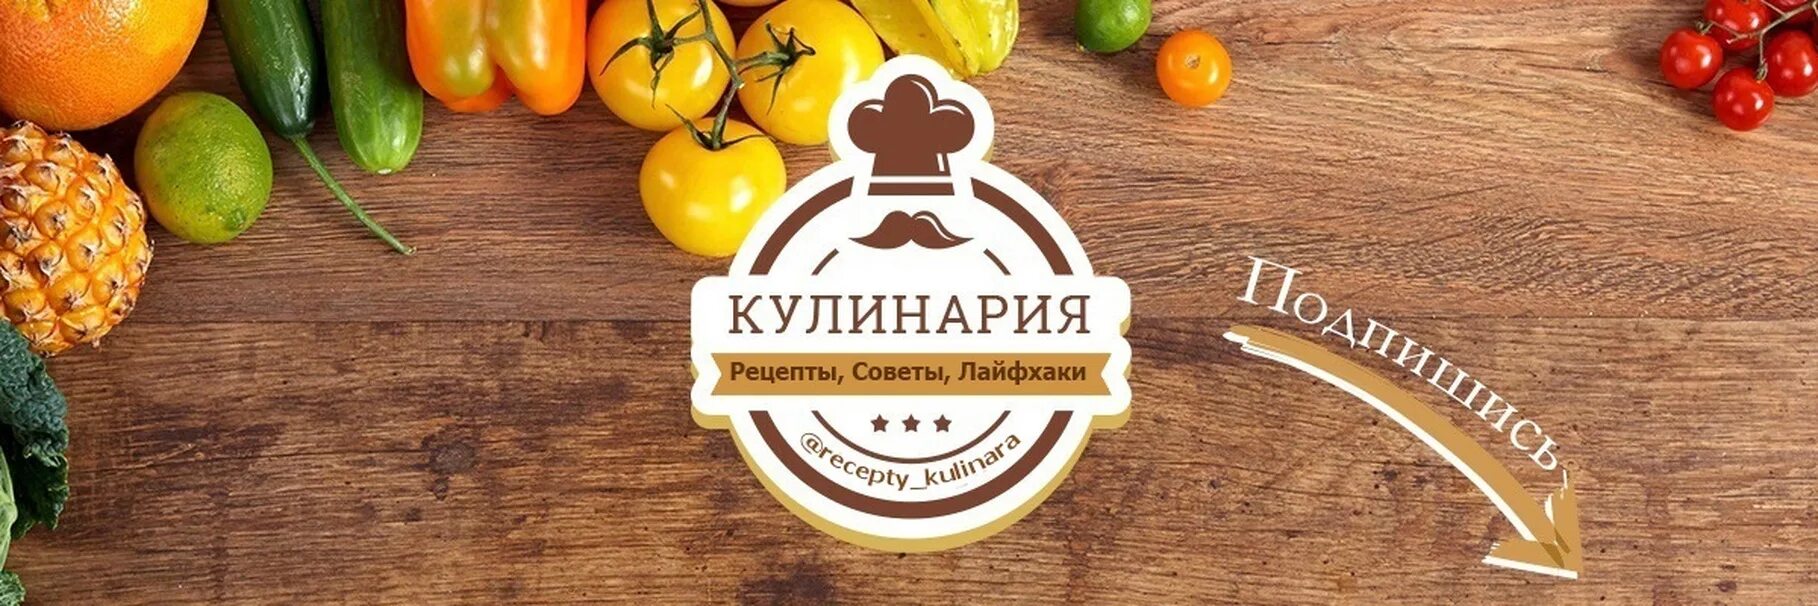 Cooking vk. Кулинария логотип. Обложка для кулинарного сообщества. Кулинария баннер. Обложка для кулинарной группы.